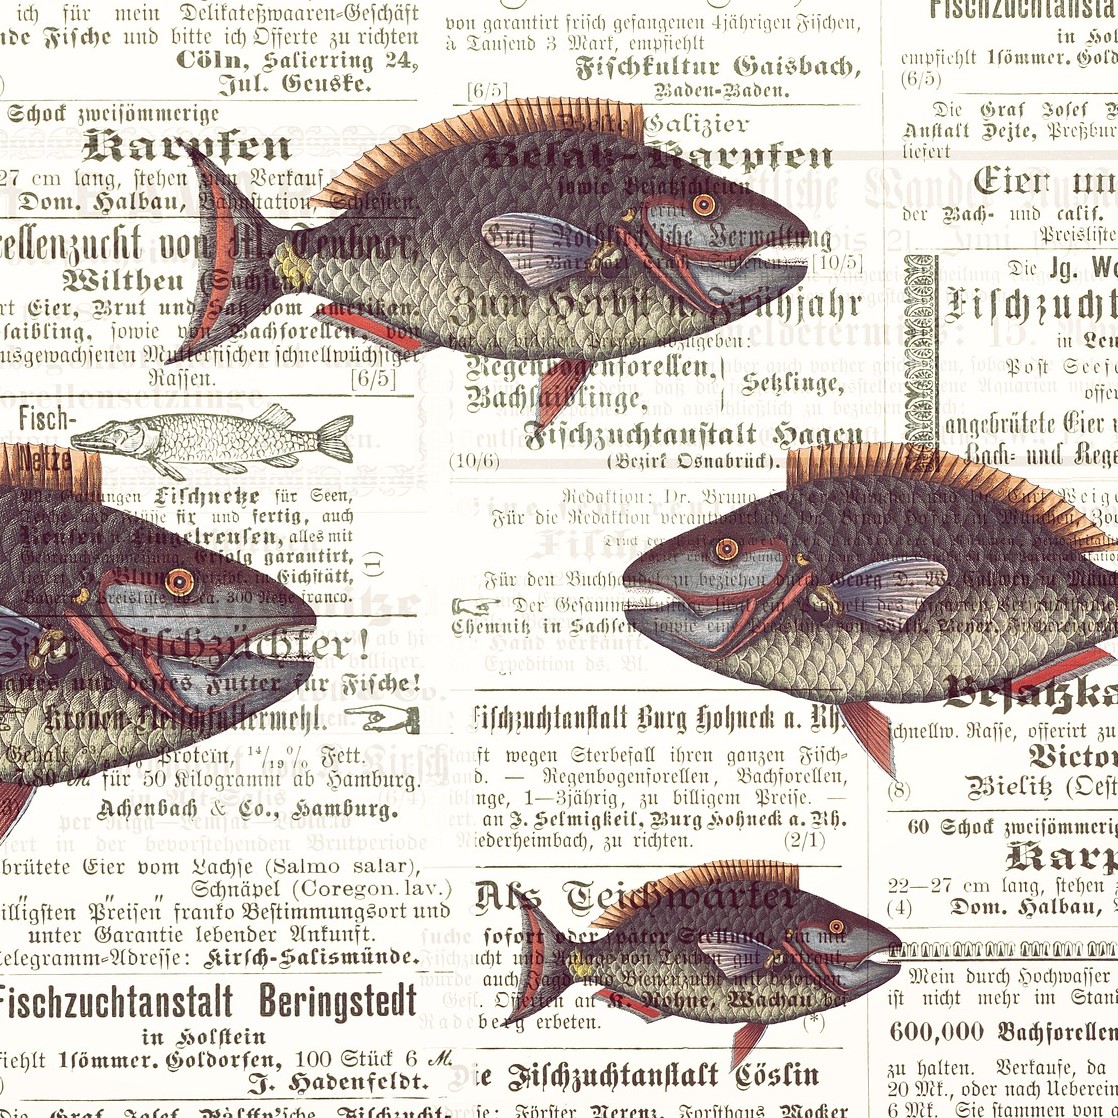 Die Zwiebelfische. Im Hintergrund ist der Ausschnitt einer alten Zeitung zu sehen. In Fraktur-Schrift sind Anzeigen rund um die Fischzucht abgedruckt. Im Vordergrund sind die Zeichnungen von vier Fischen zusehen. Drei von ihnen schauen nach rechts, ein einzelner schaut nach links. Bild von Susann Mielke via Pixabay.